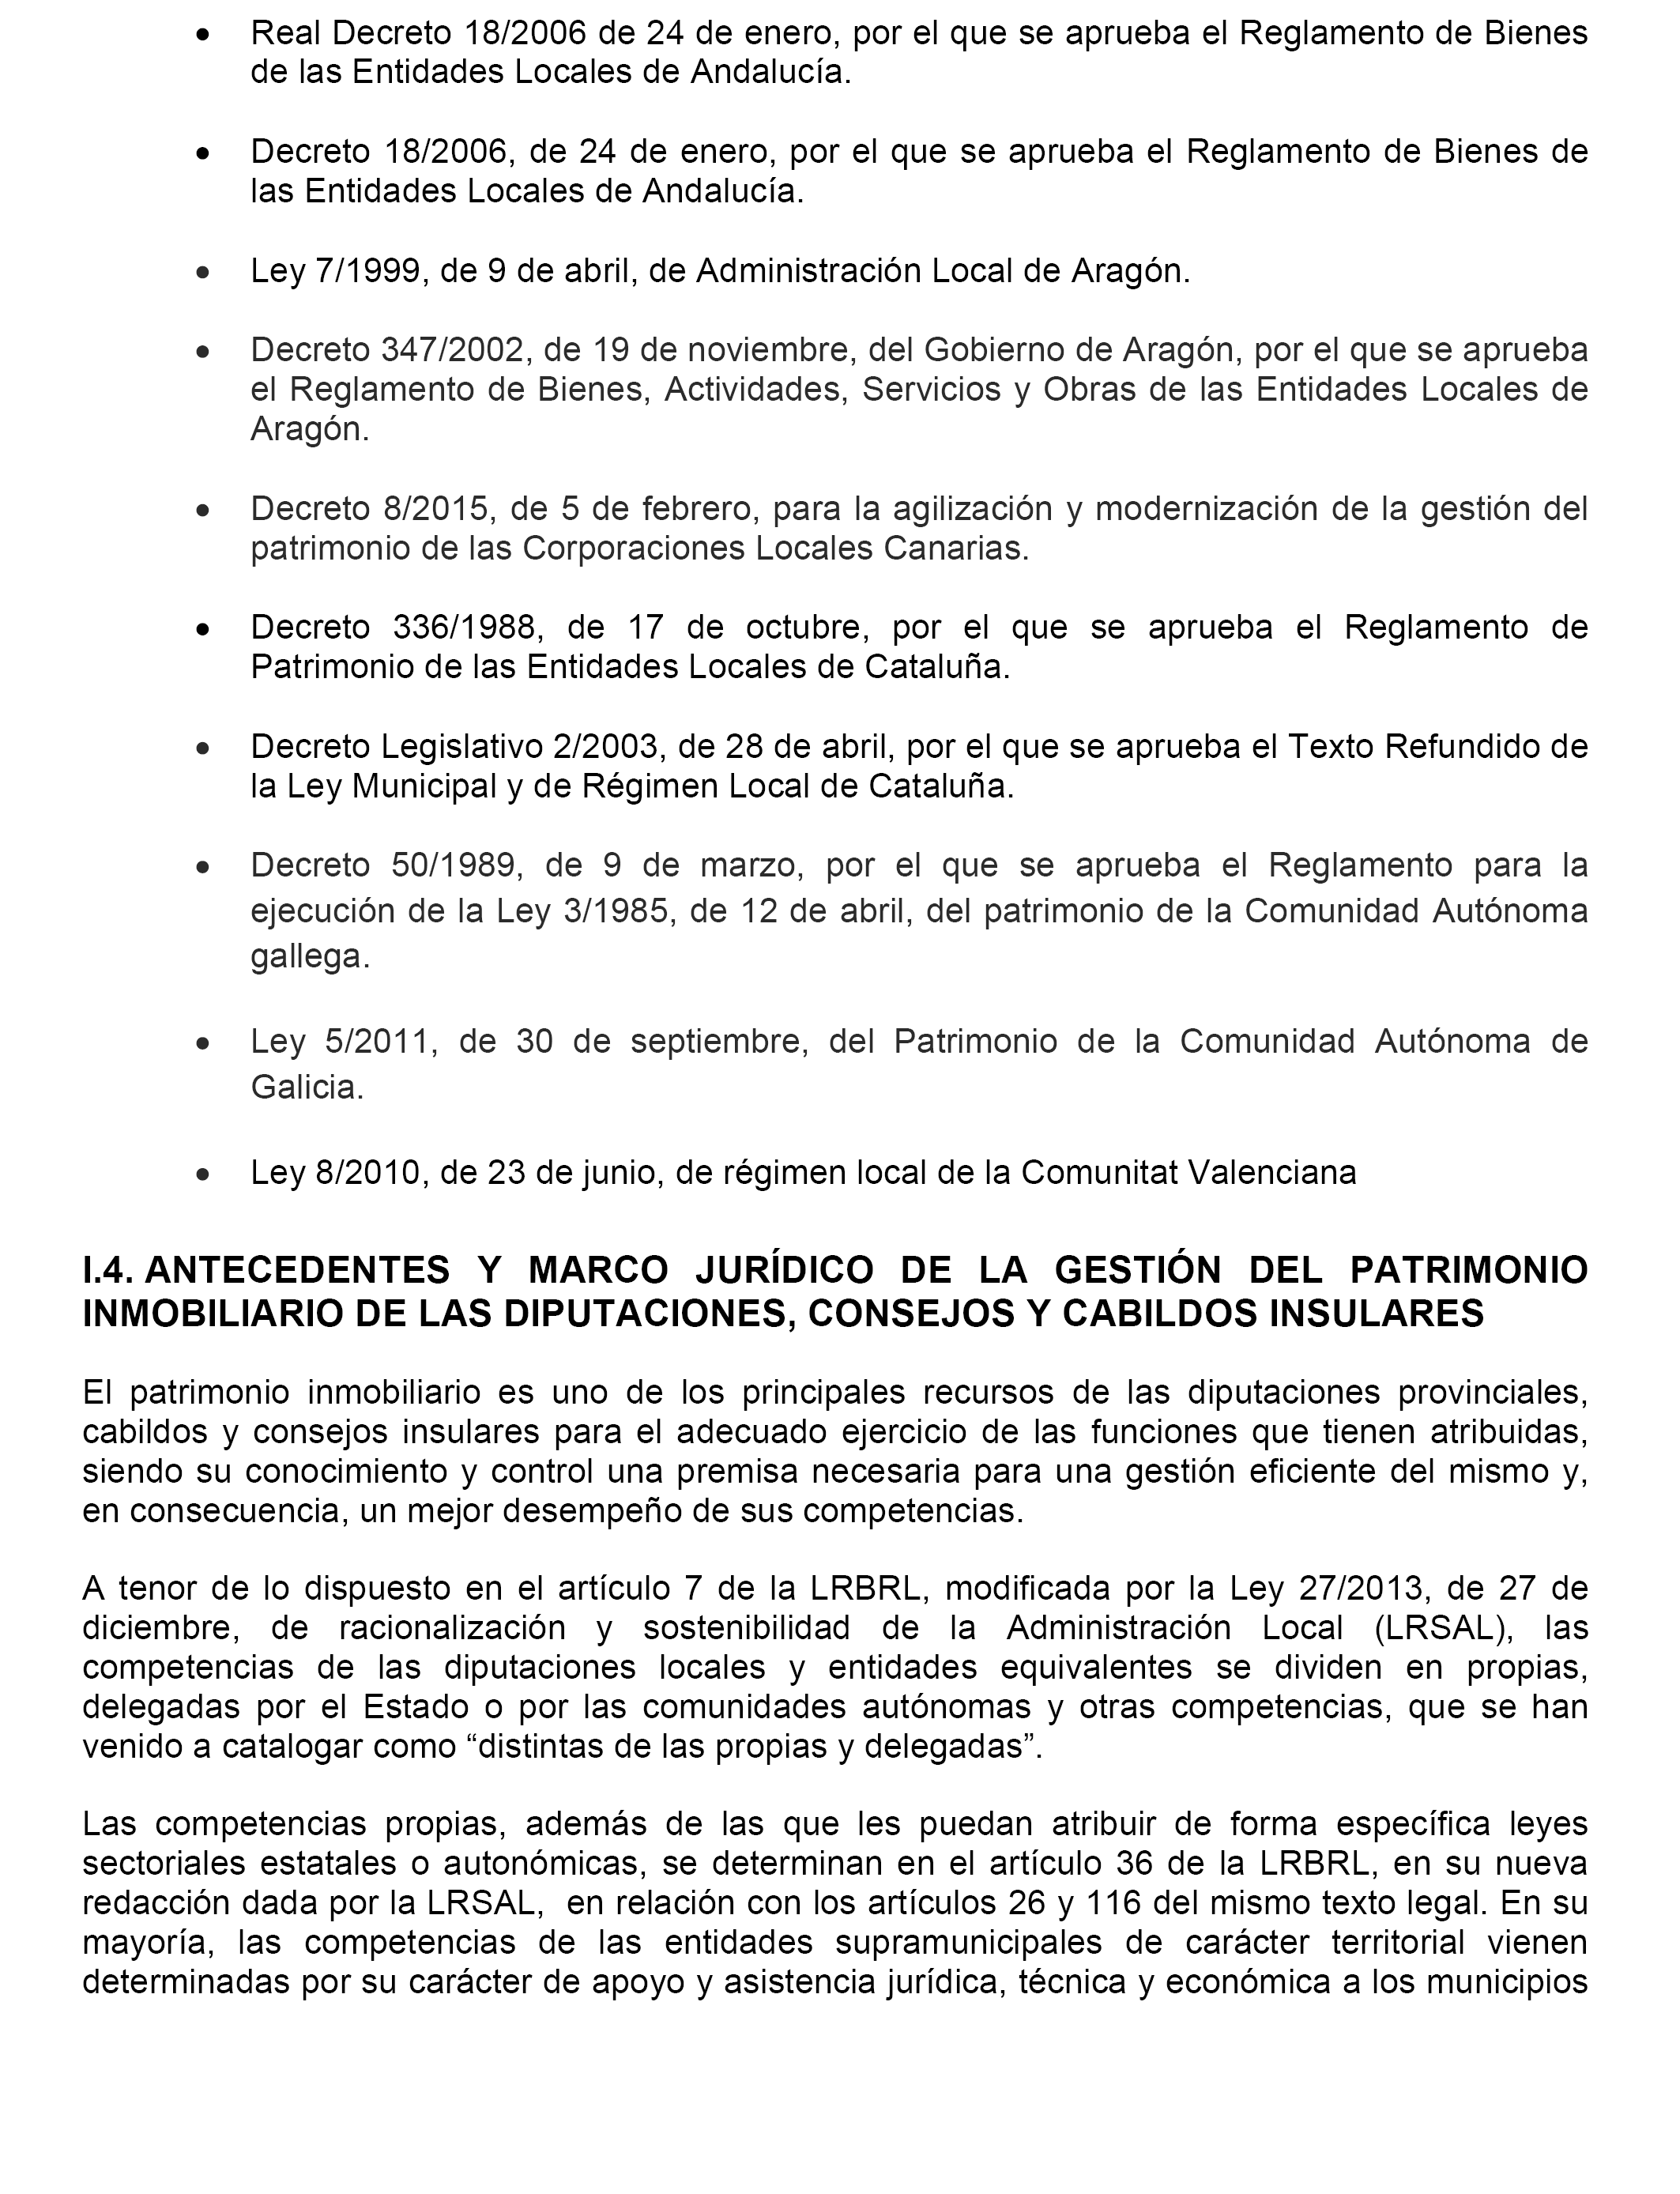 BOE.es - BOE-A-2018-9743 Resolución de 9 de mayo de 2018, aprobada por la  Comisión Mixta para las Relaciones con el Tribunal de Cuentas, en relación  con el Informe de fiscalización del patrimonio